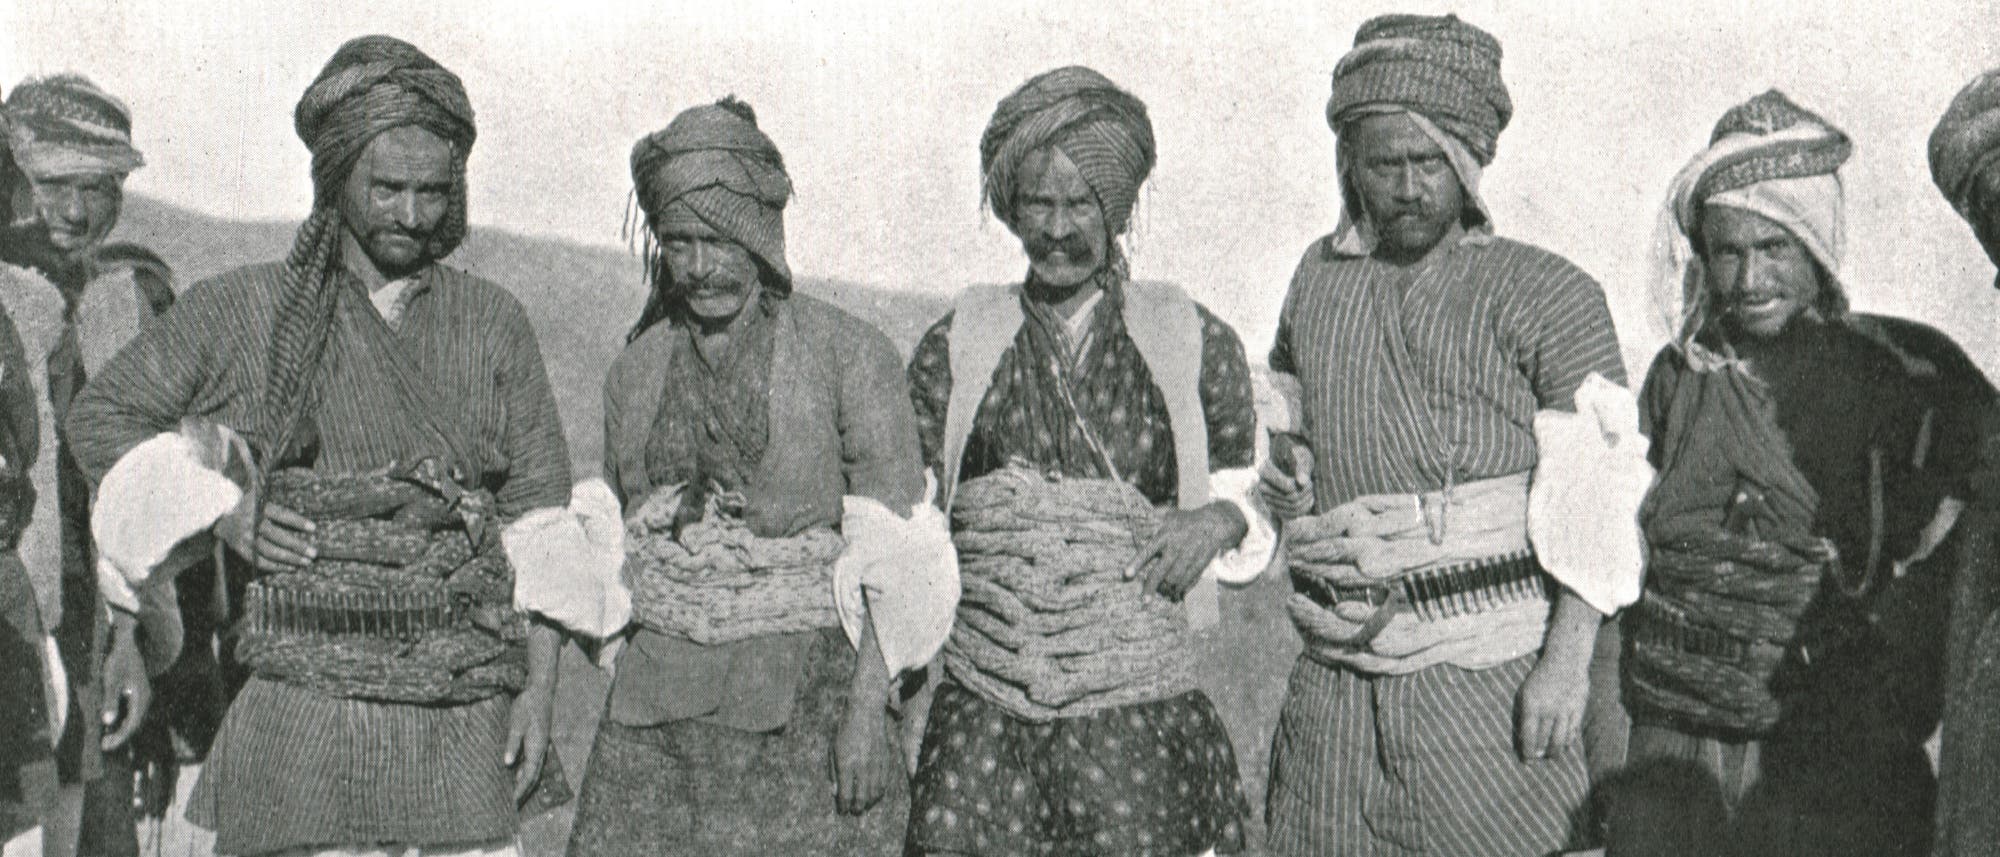 Eine Gruppe kurdischer Männer, wahrscheinlich in der Region um Erbil, posiert für ein Bild um 1915.